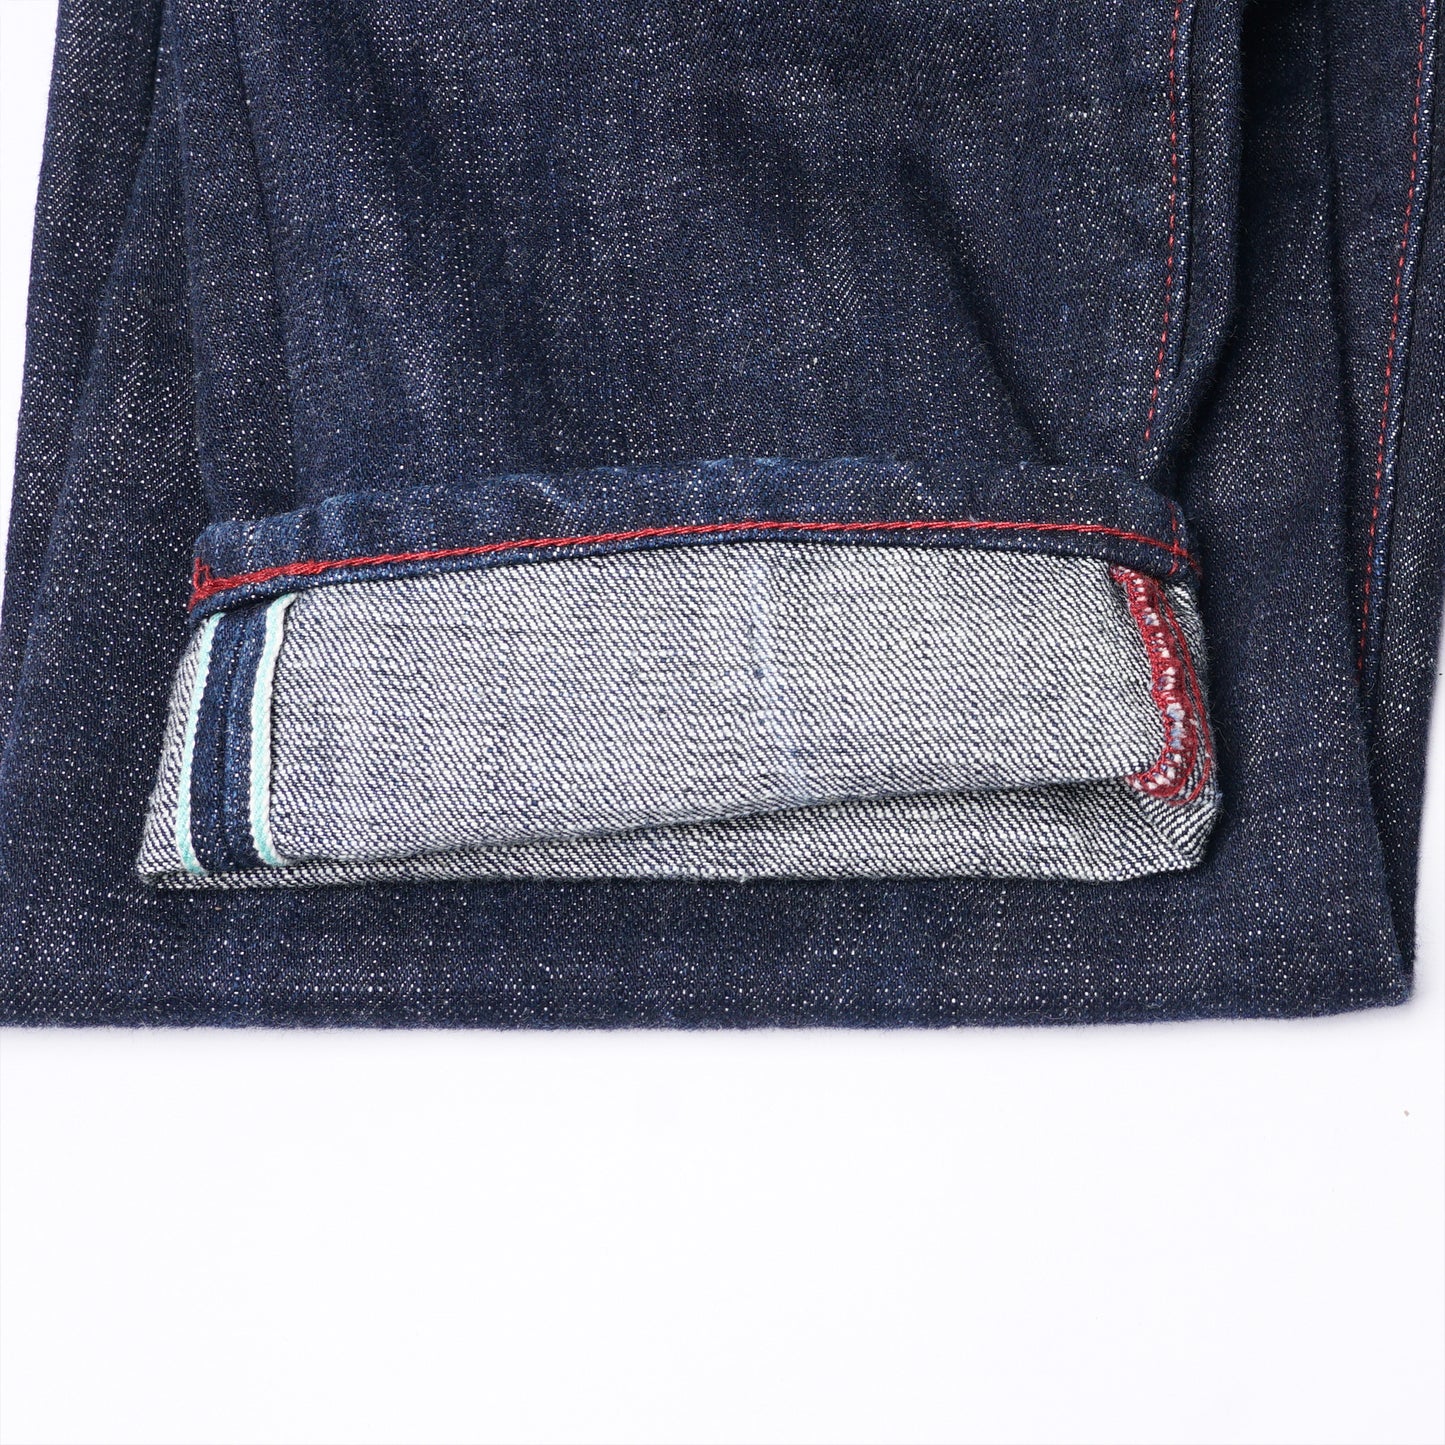 【Custom】H291 18oz. Kaihara Denim Straight Cut Jeans